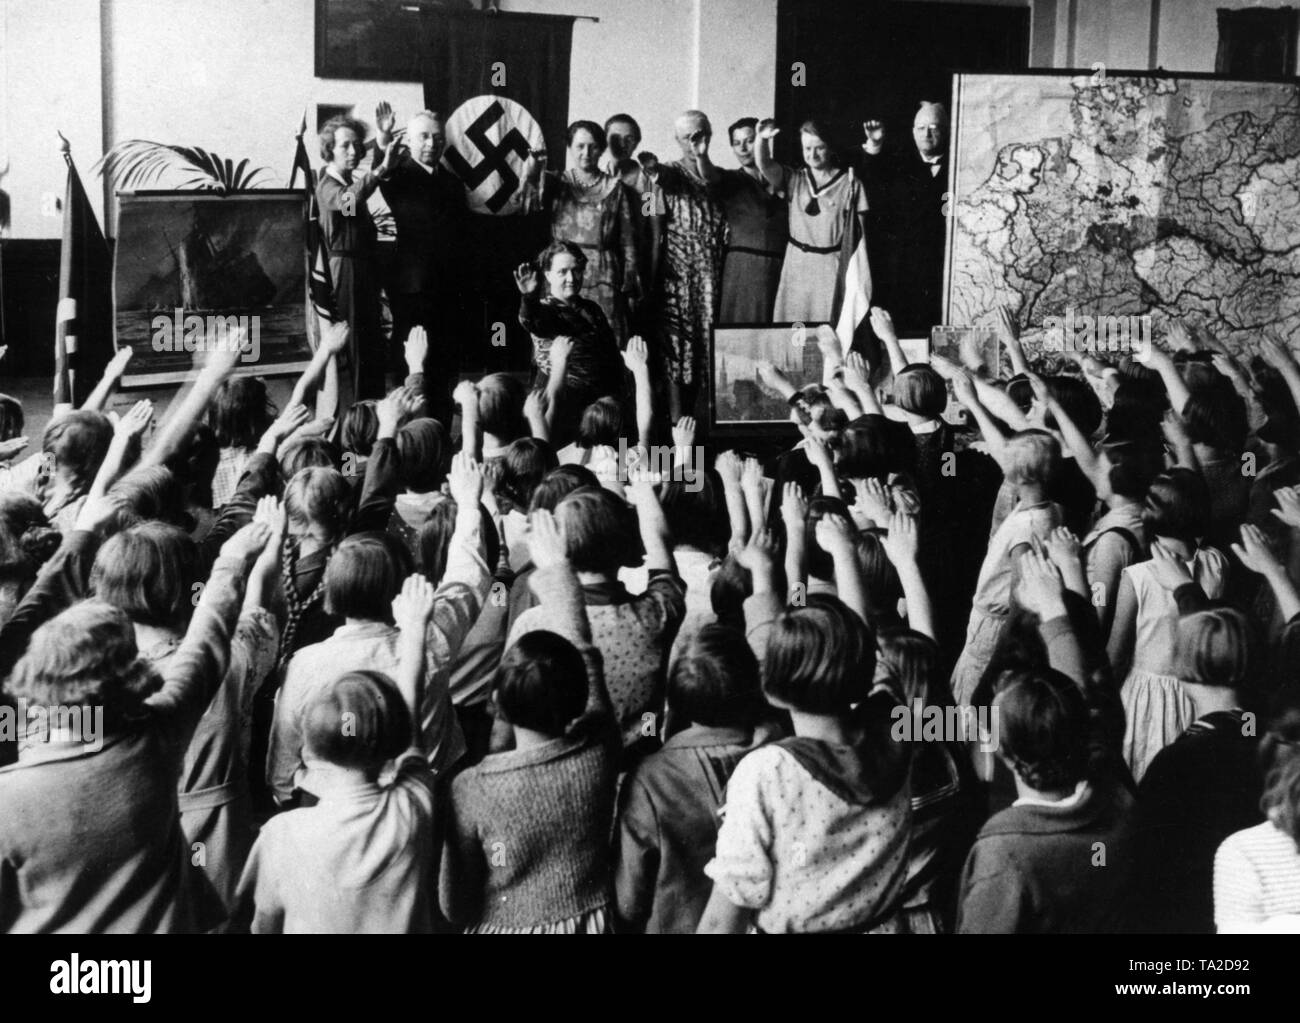 Dans une classe de l'école élémentaire, décoré avec des affiches de propagande de la seconde guerre mondiale, un drapeau à croix gammée et une carte avec les territoires séparés pour le Traité de Versailles, les enseignants et les élèves un honneur national 'celebration' avec le chant de l'hymne national allemand et le Horst Wessel Lied (chant), ainsi que le salut hitlérien. Banque D'Images